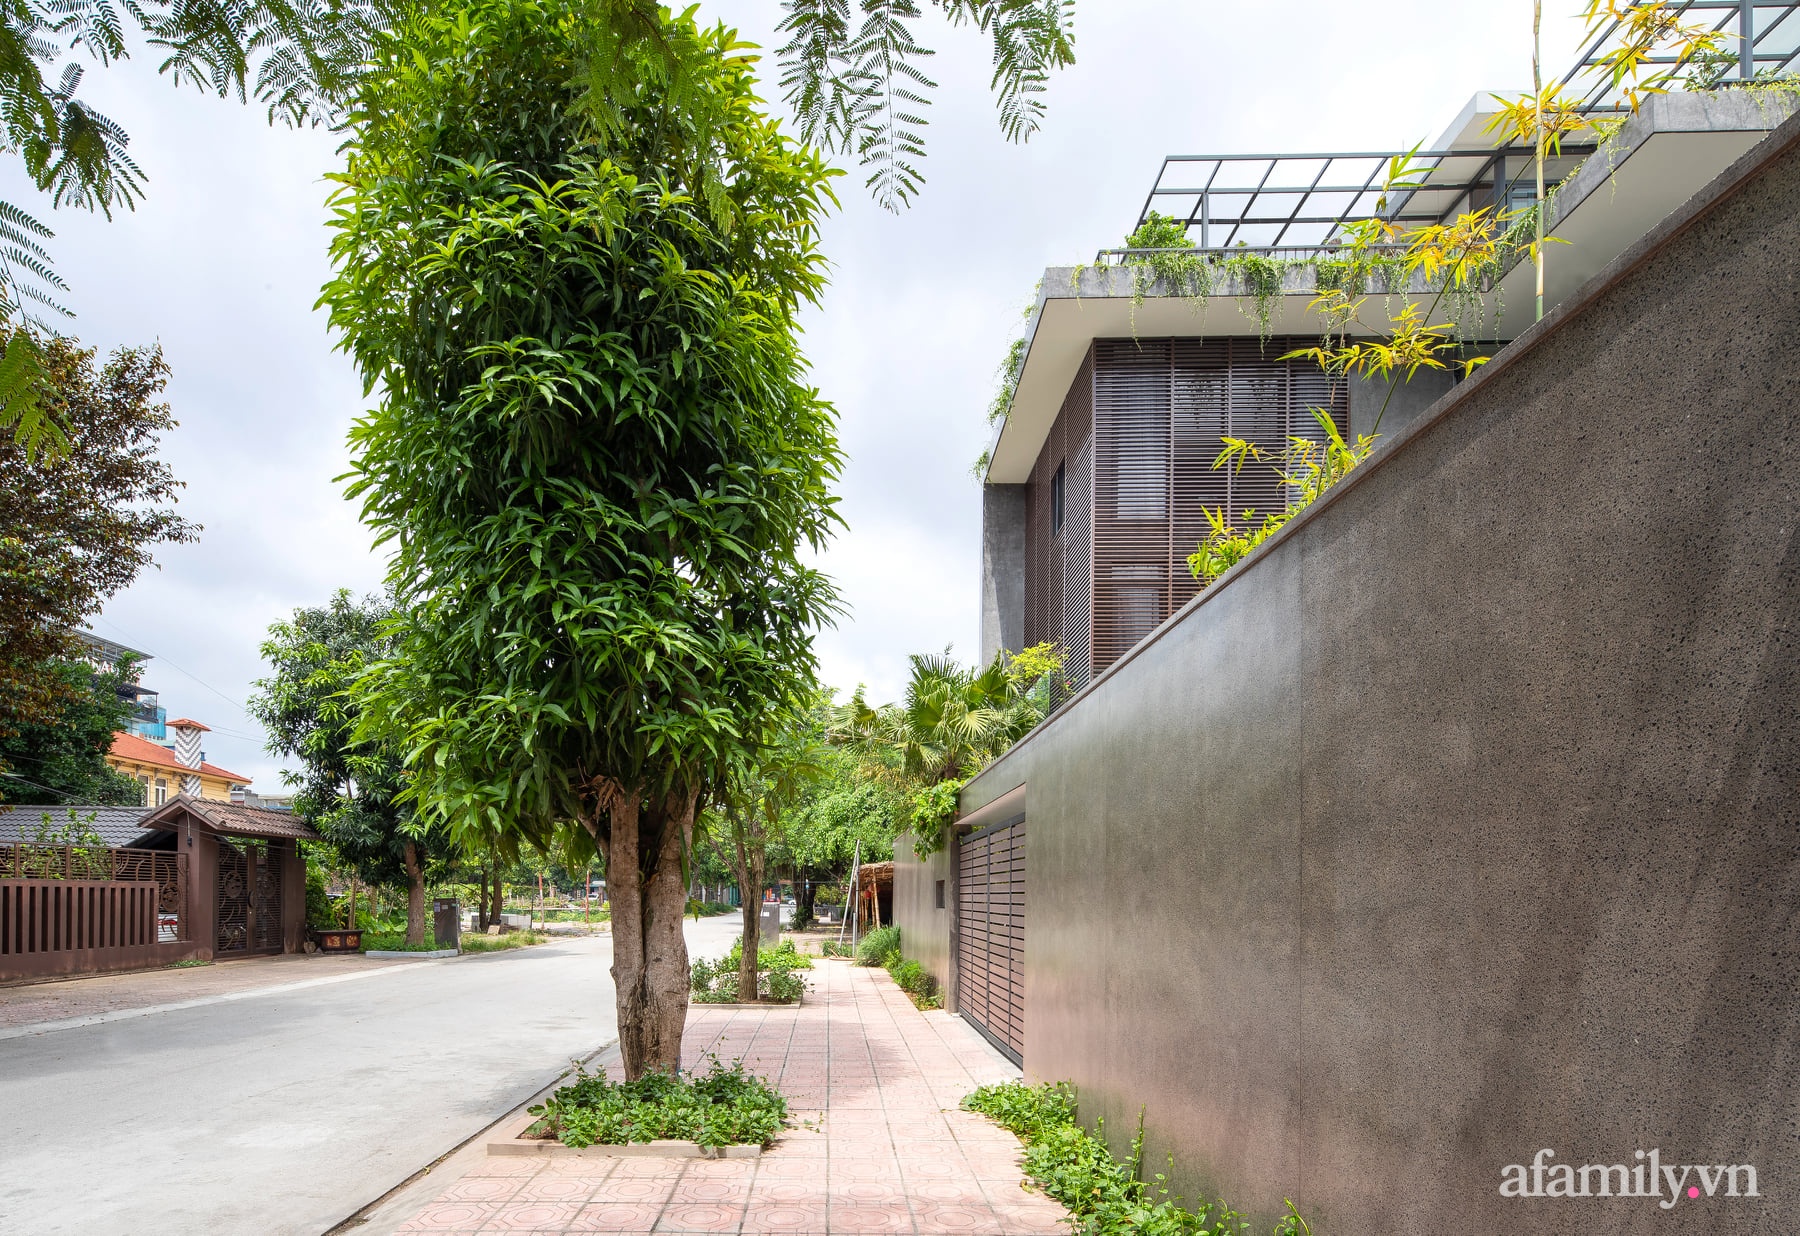 Ngôi nhà với thiết kế hiện đại thu trọn vẻ đẹp của nhịp sống thường nhật ở thành phố Ninh Bình - Ảnh 1.